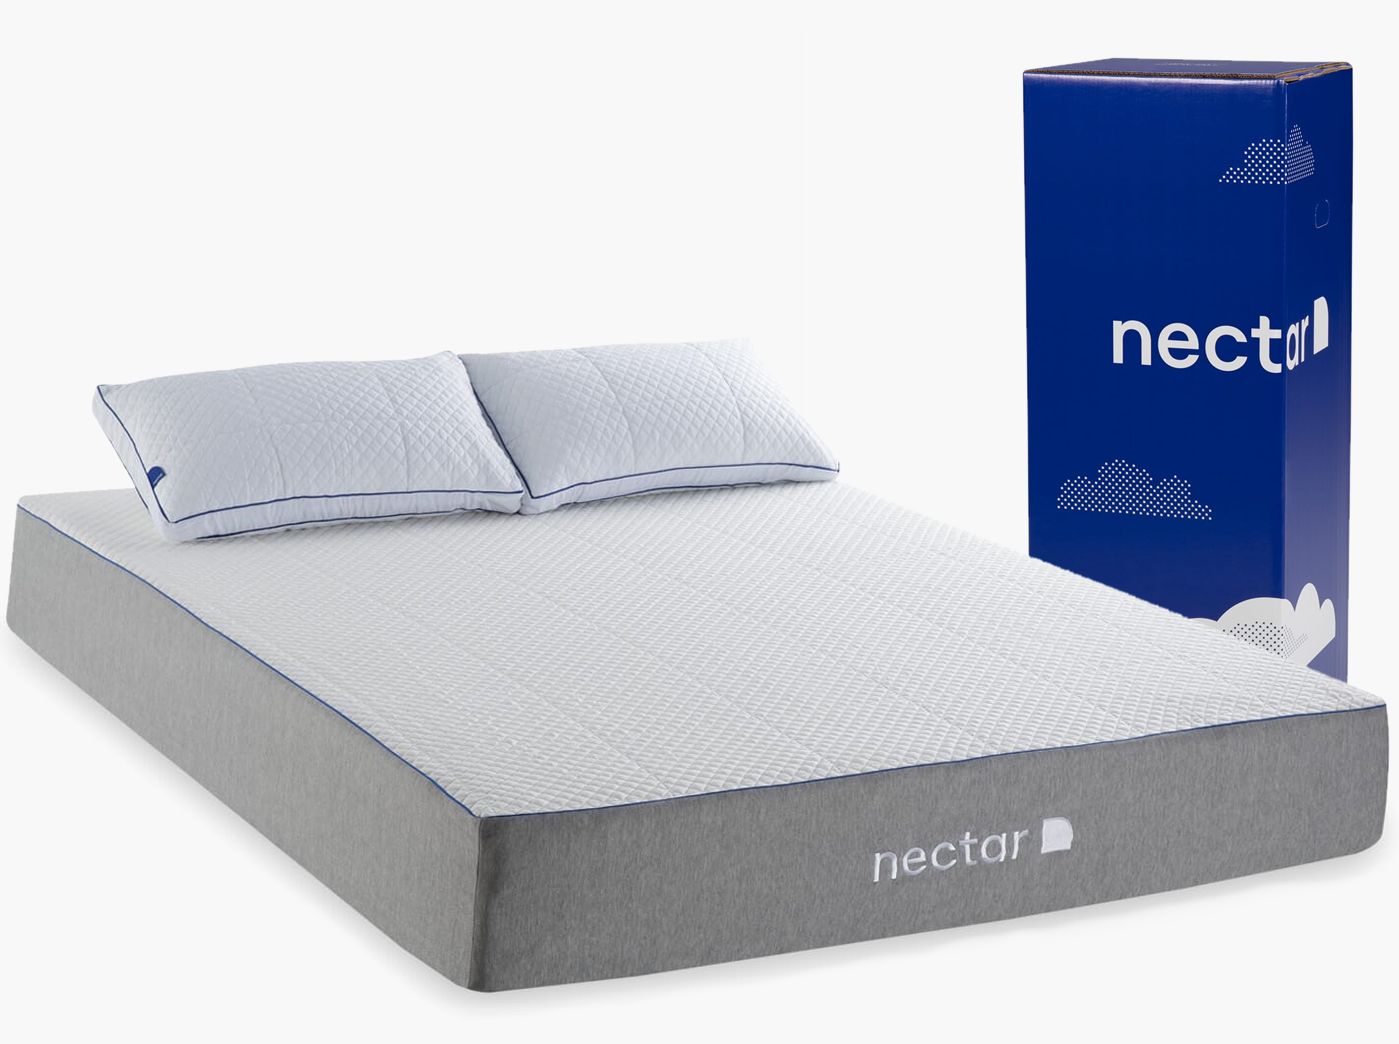 The Nectar Memory Foam Mattress, SleepBetter